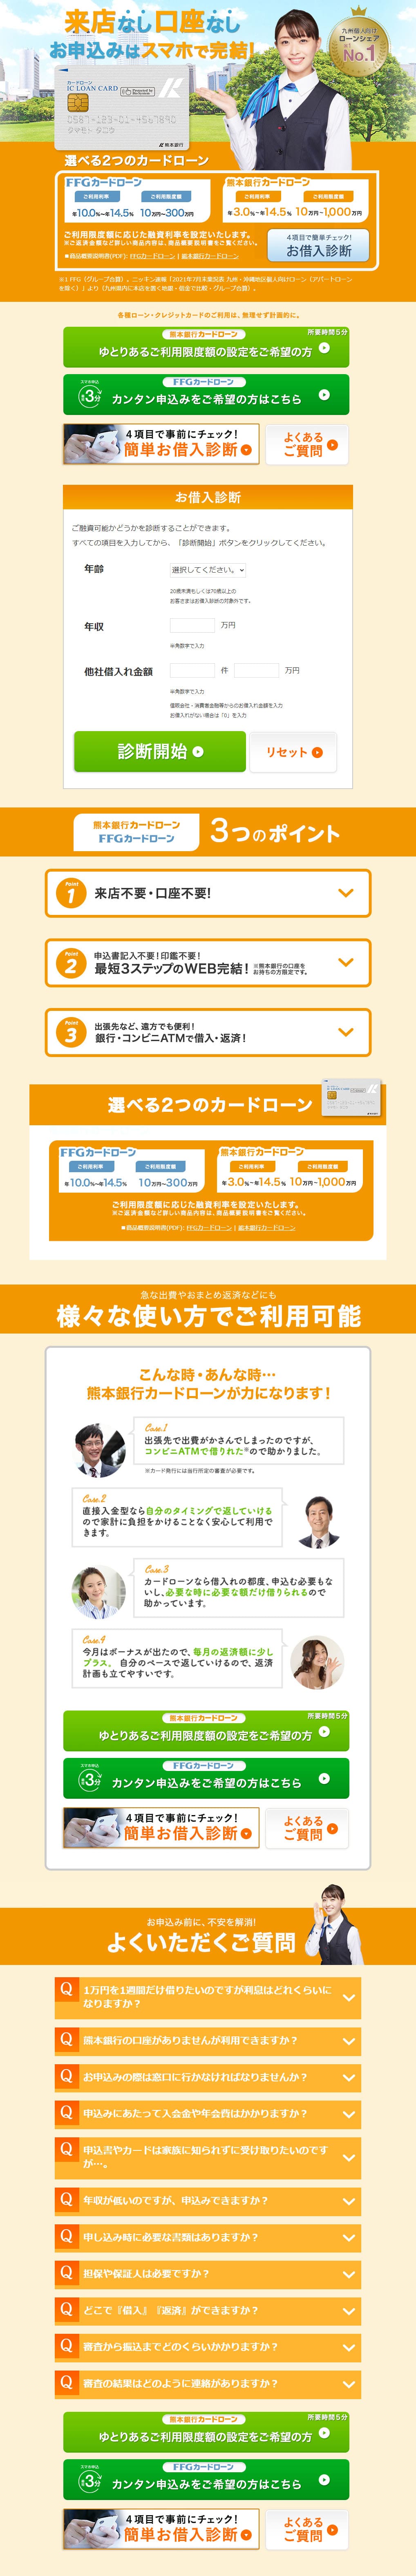 熊本銀行カードローン_pc_1